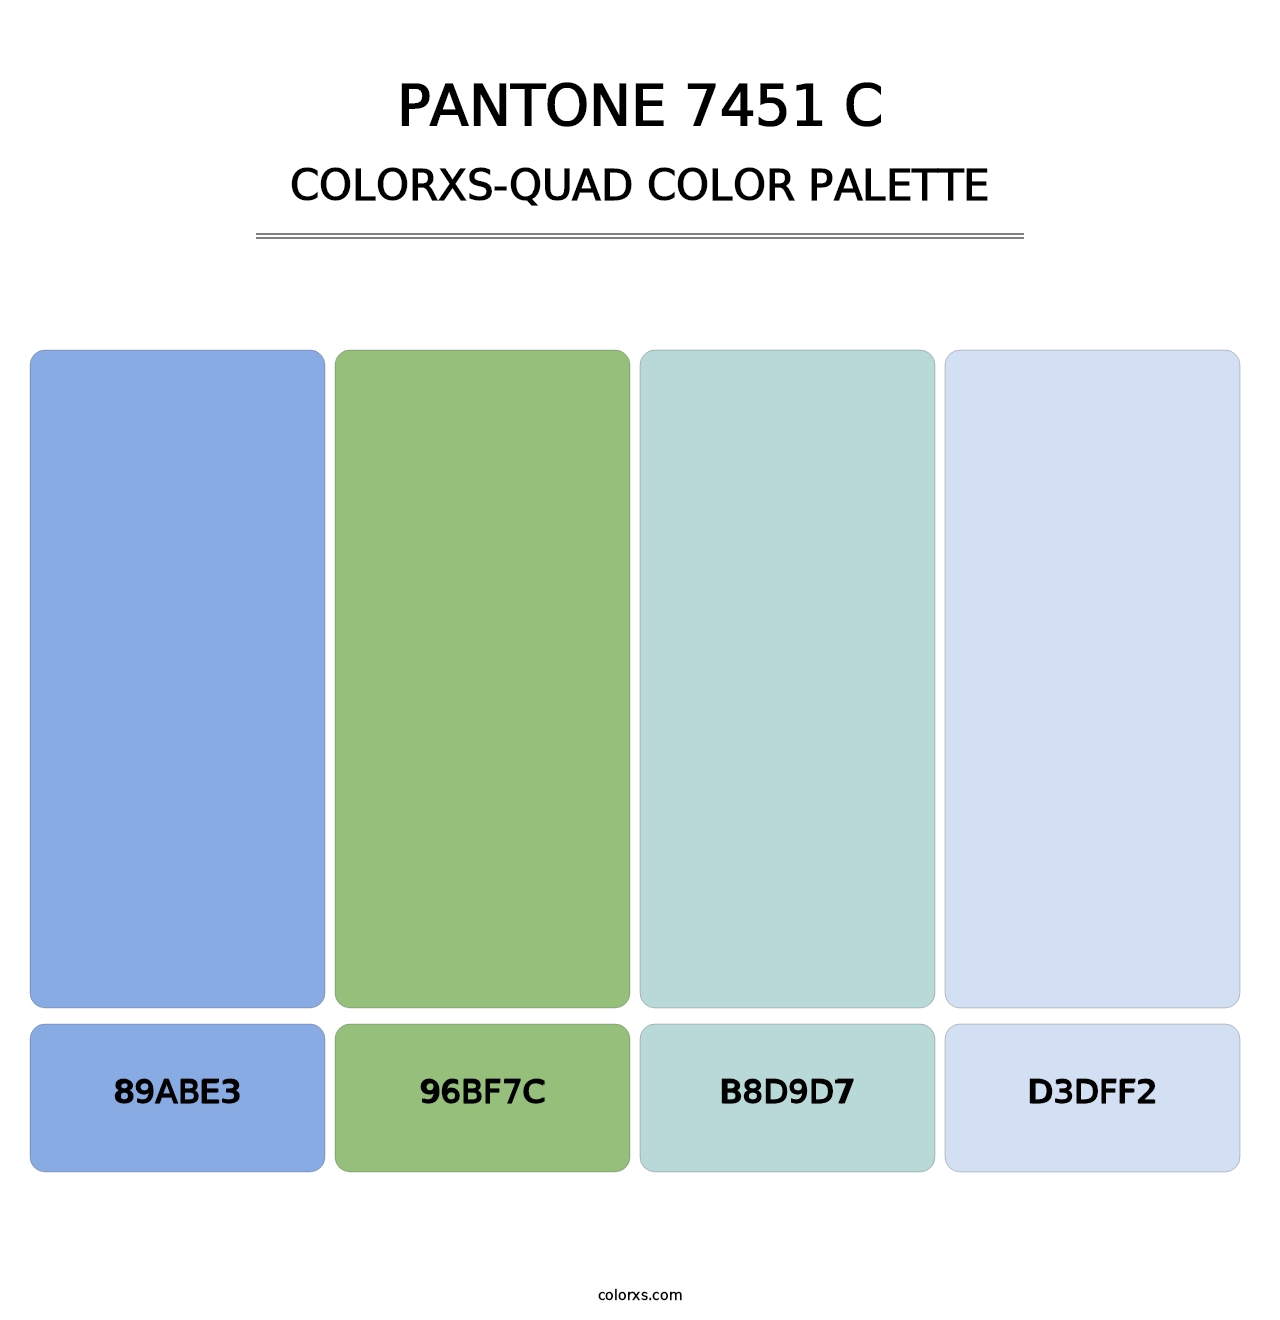 PANTONE 7451 C - Colorxs Quad Palette